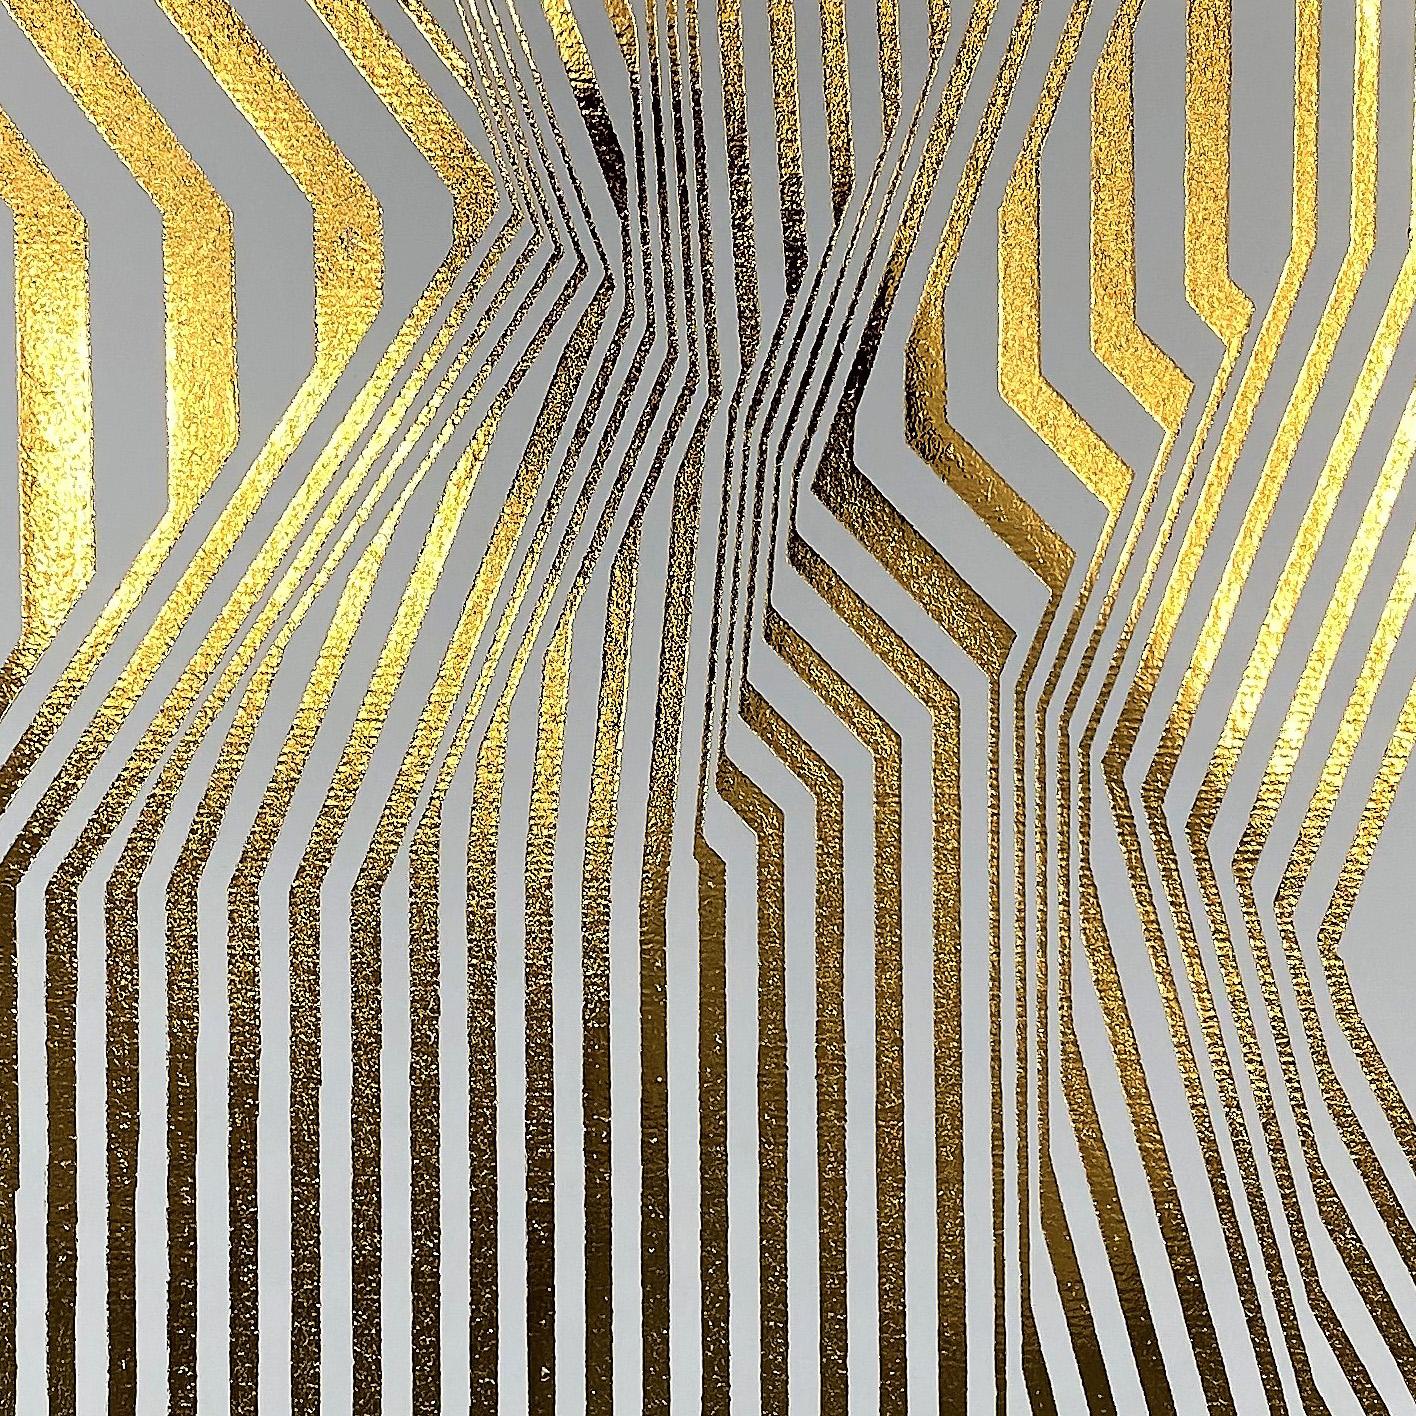 Marokko Serie 3 (Abstrakte Malerei)

Thermometallische Übertragung auf Papier

Dieses Kunstwerk wird aufgerollt in einer verbeulungssicheren Röhre versandt.
Diese Methode ist besonders sicher für große Werke und bietet außerdem niedrigere